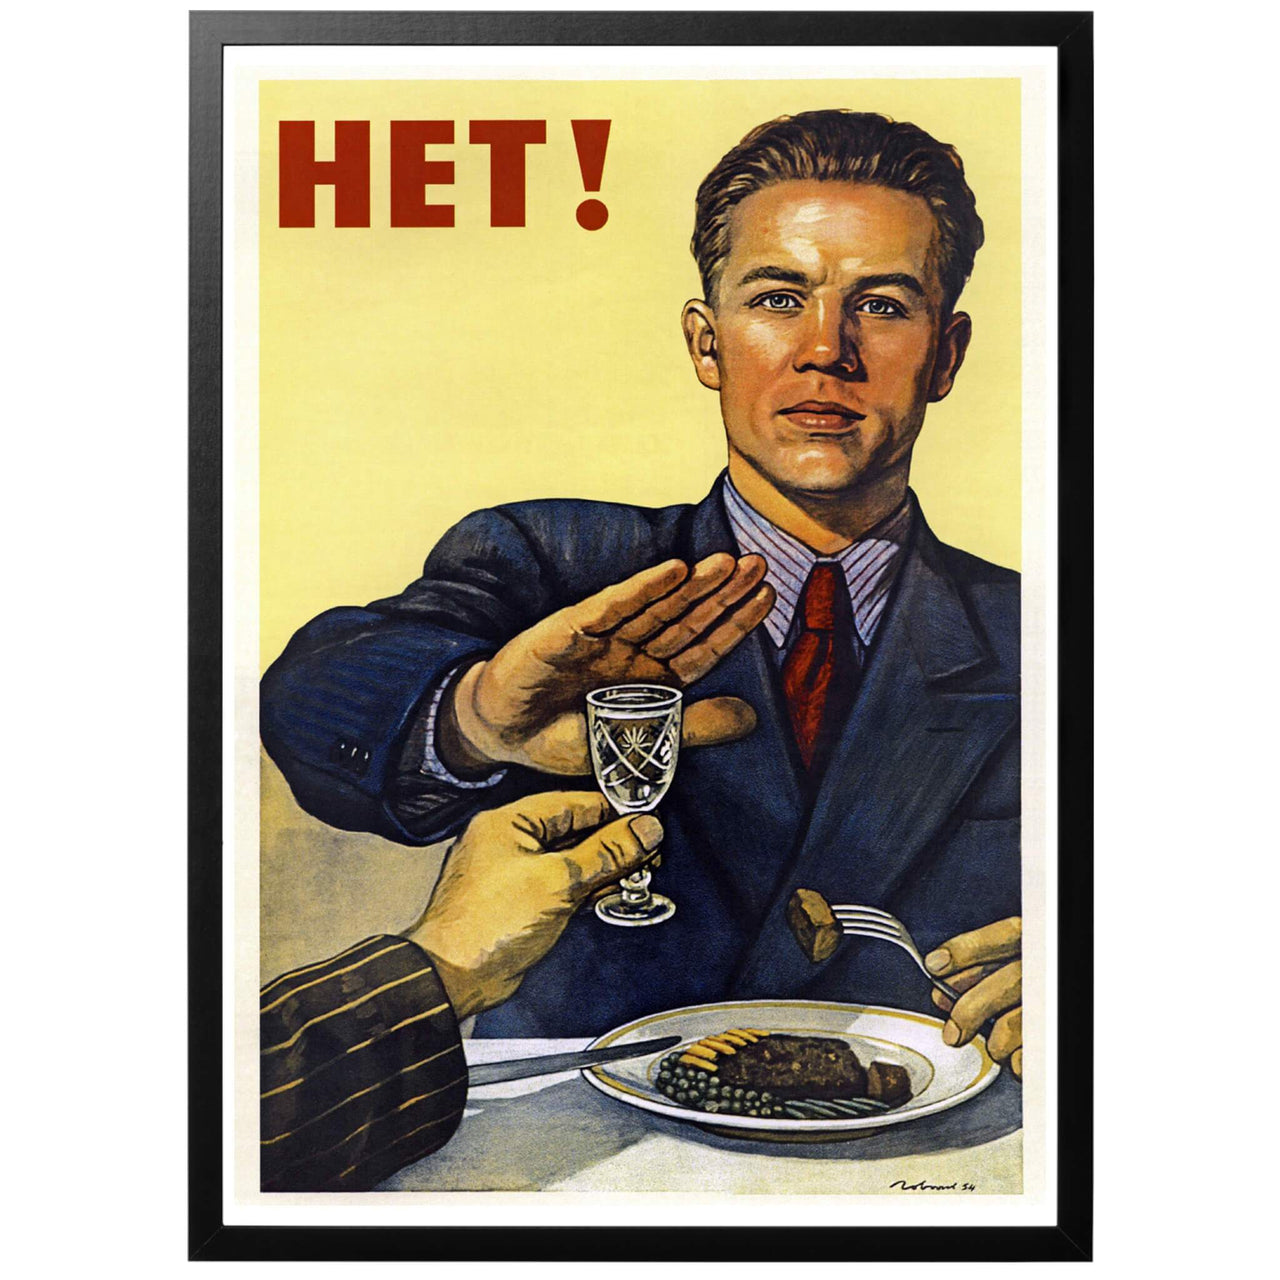 HET! Sv - "Nej!" Sovjetisk anti-alkohol-poster från 1954. En riktig klassiker! Snygg vintage poster som passar perfekt i köket eller vardagsrummet. Varför inte att kombinera med Albert Engströms gamla affisch "kräftor kräva dessa drycker"? Köp till ram och få din affisch inramad utan extra kostnad!